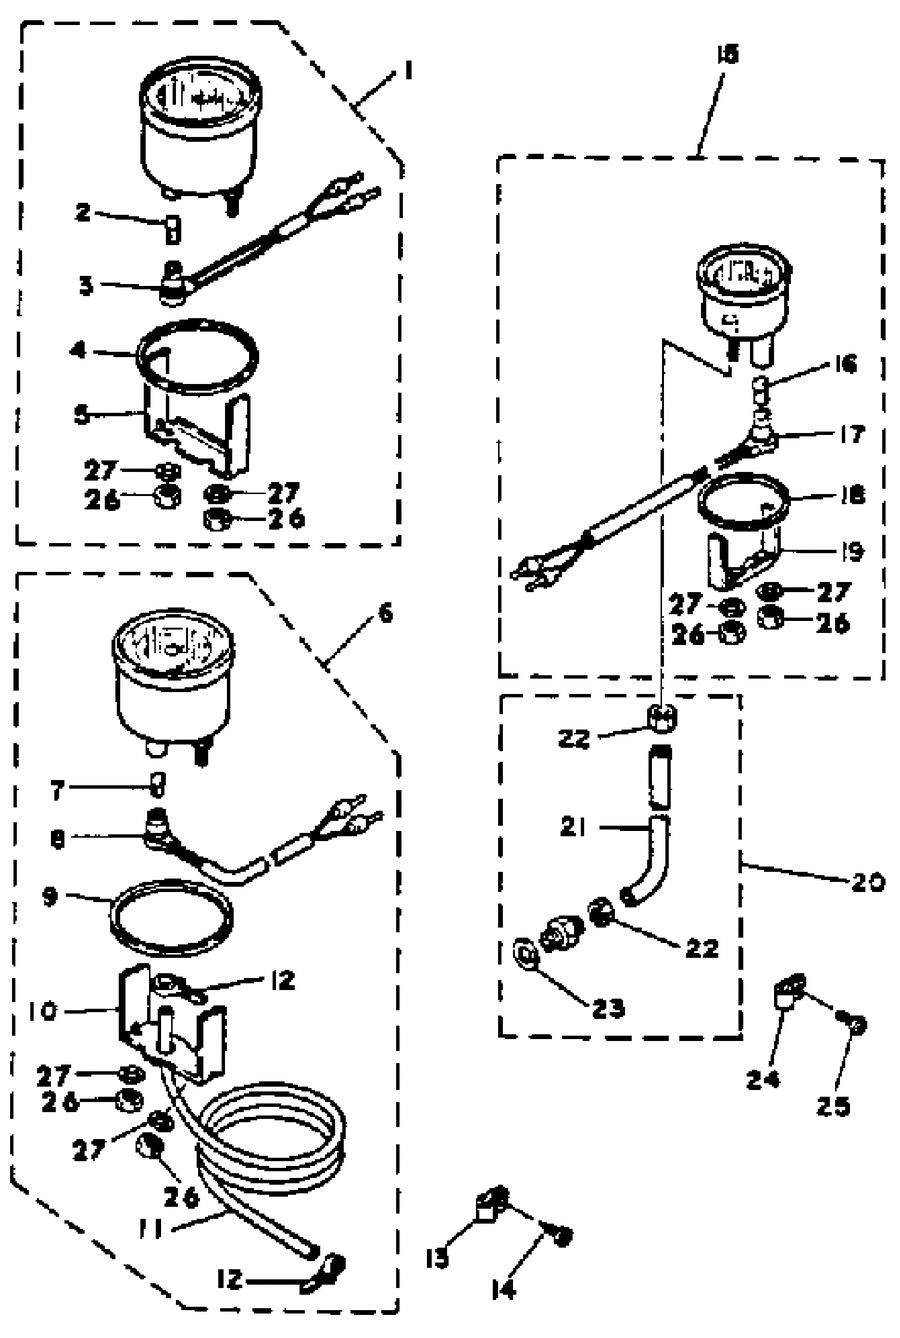 1985 150ETLK OPTIONAL PARTS GAUGES & COMPONENT PARTS 1